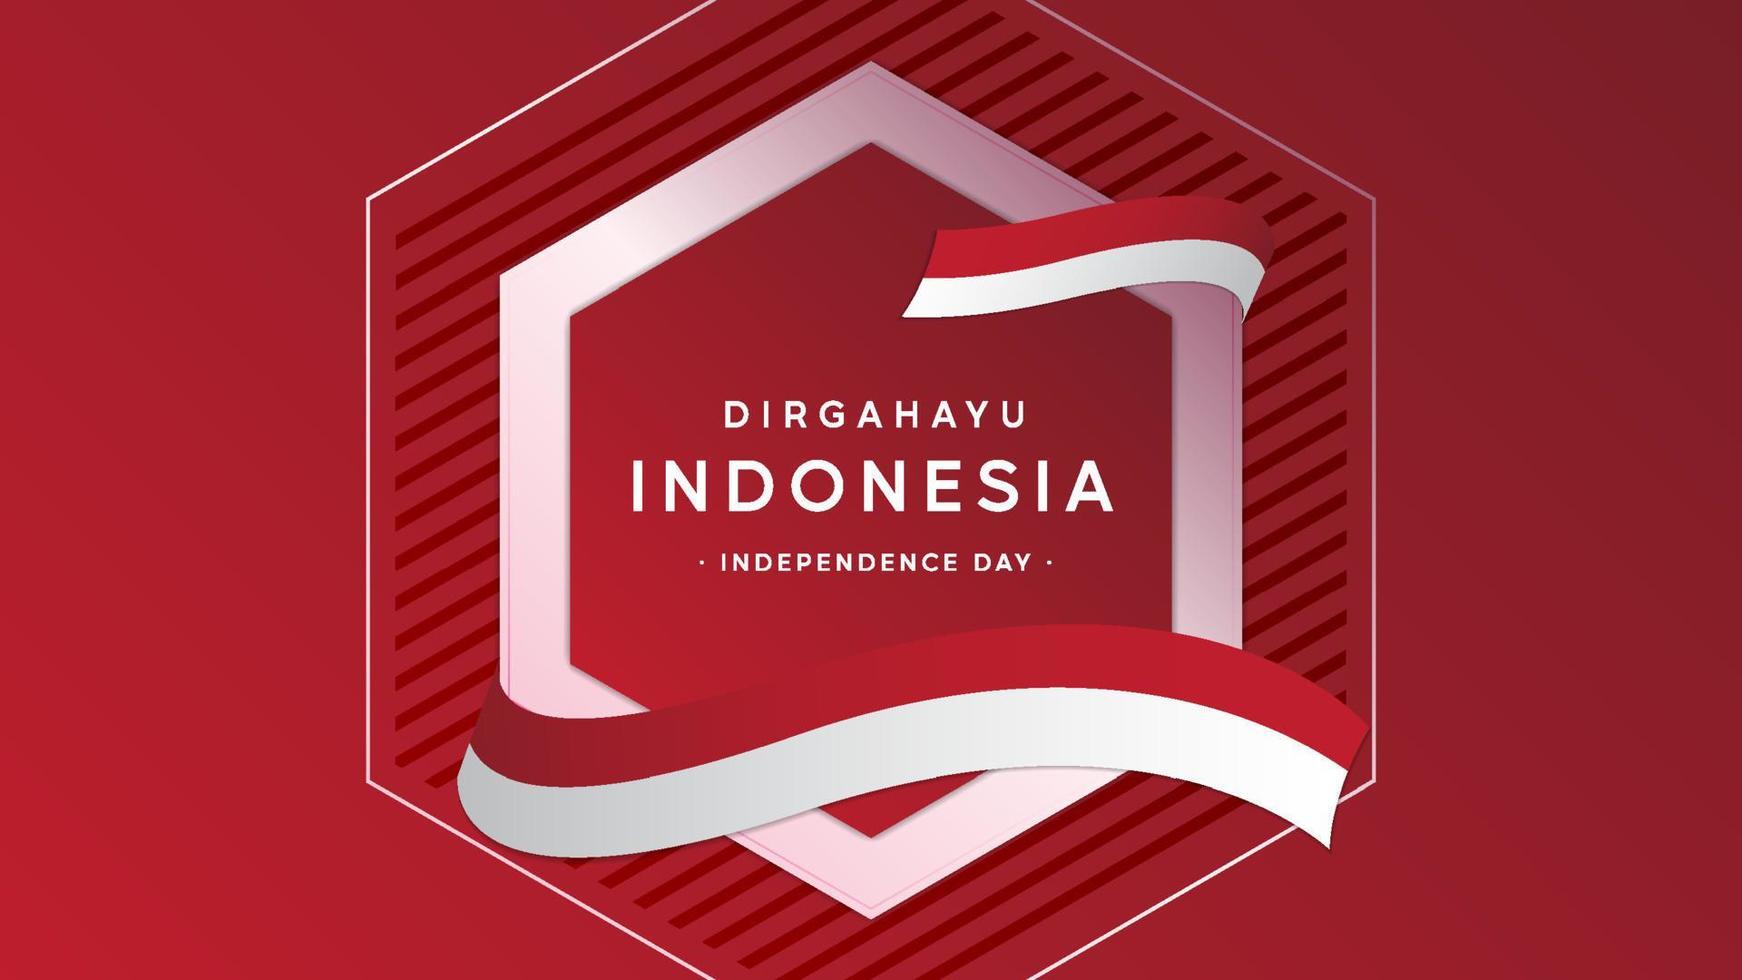 conception de fond de la fête de l'indépendance de l'indonésie vecteur